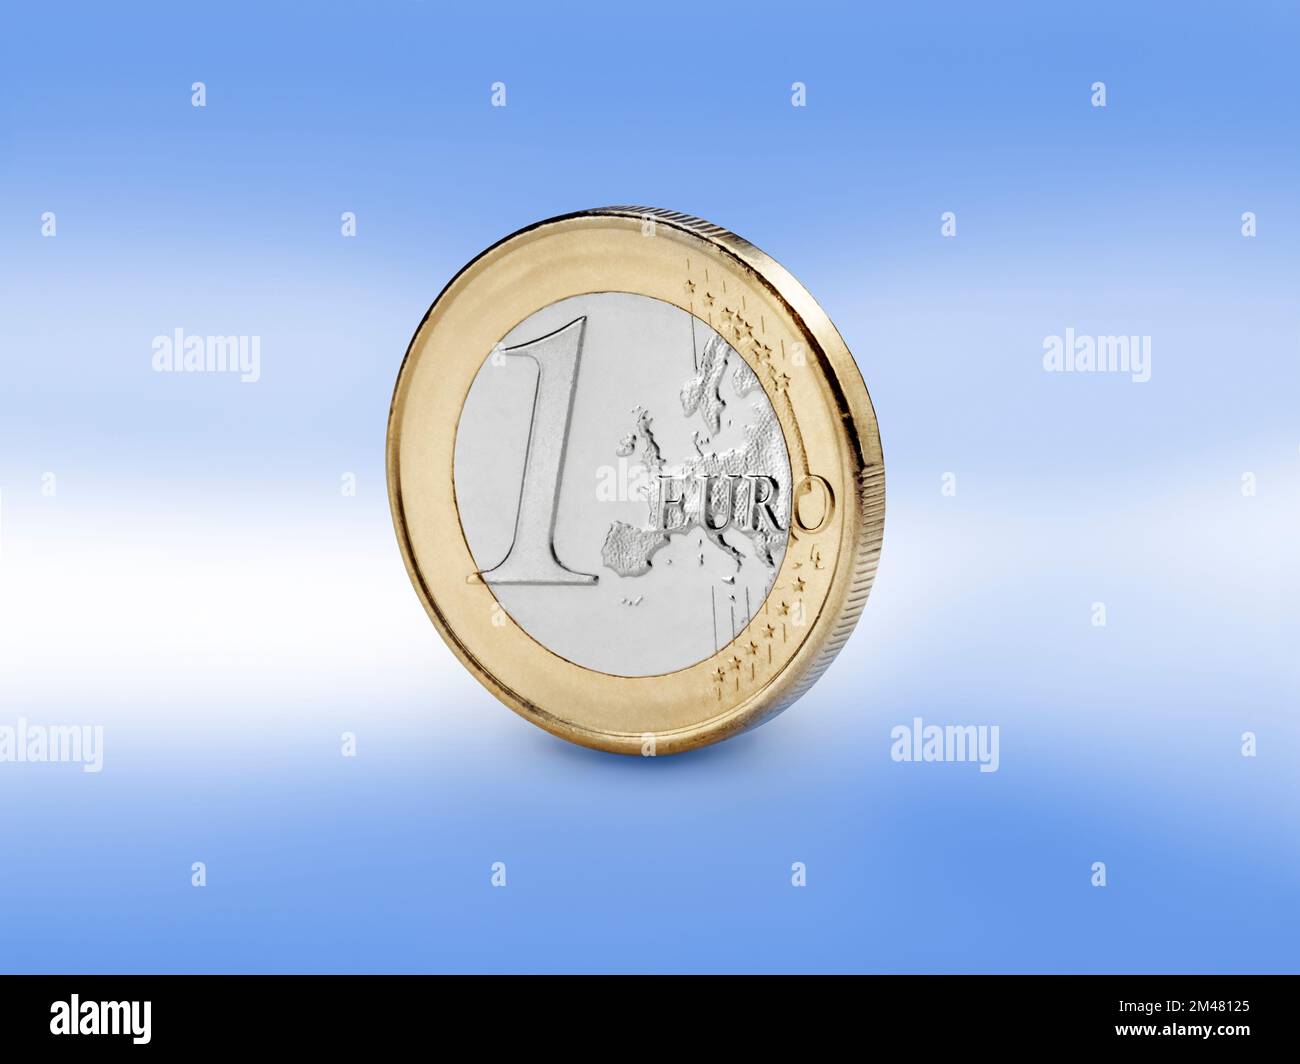 Vista de primer plano de la moneda de euro contra fondo de color azul europeo. Foto de stock